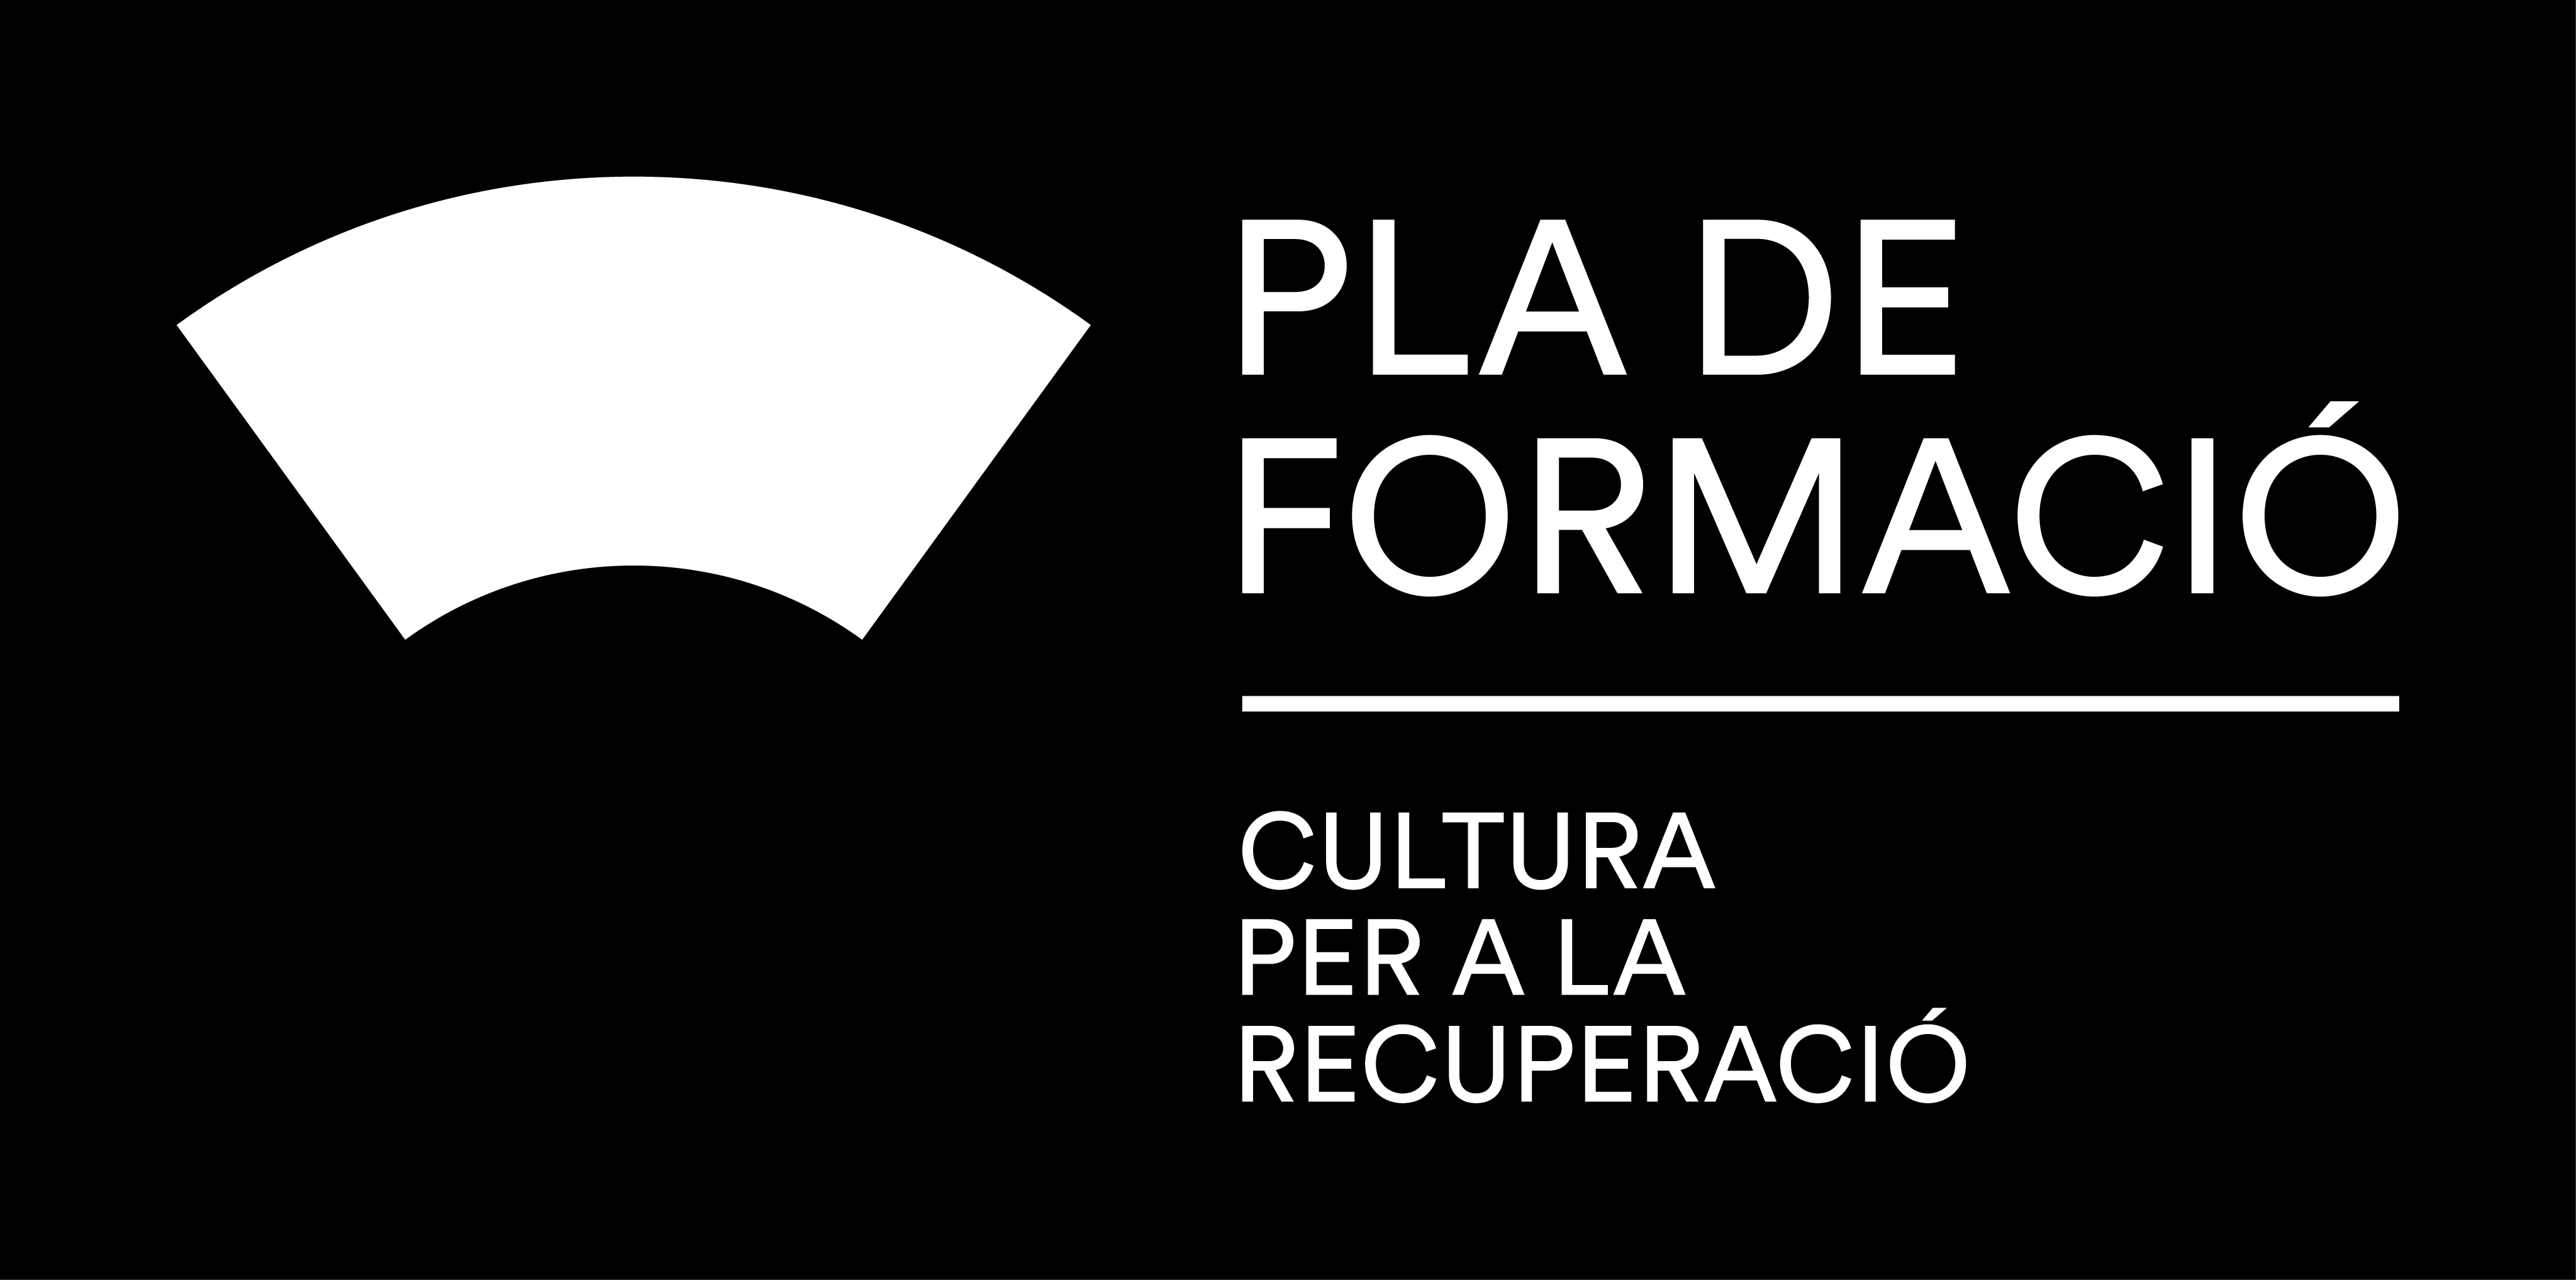 Recurs d'imatge pla-formacio-gva-cultura index